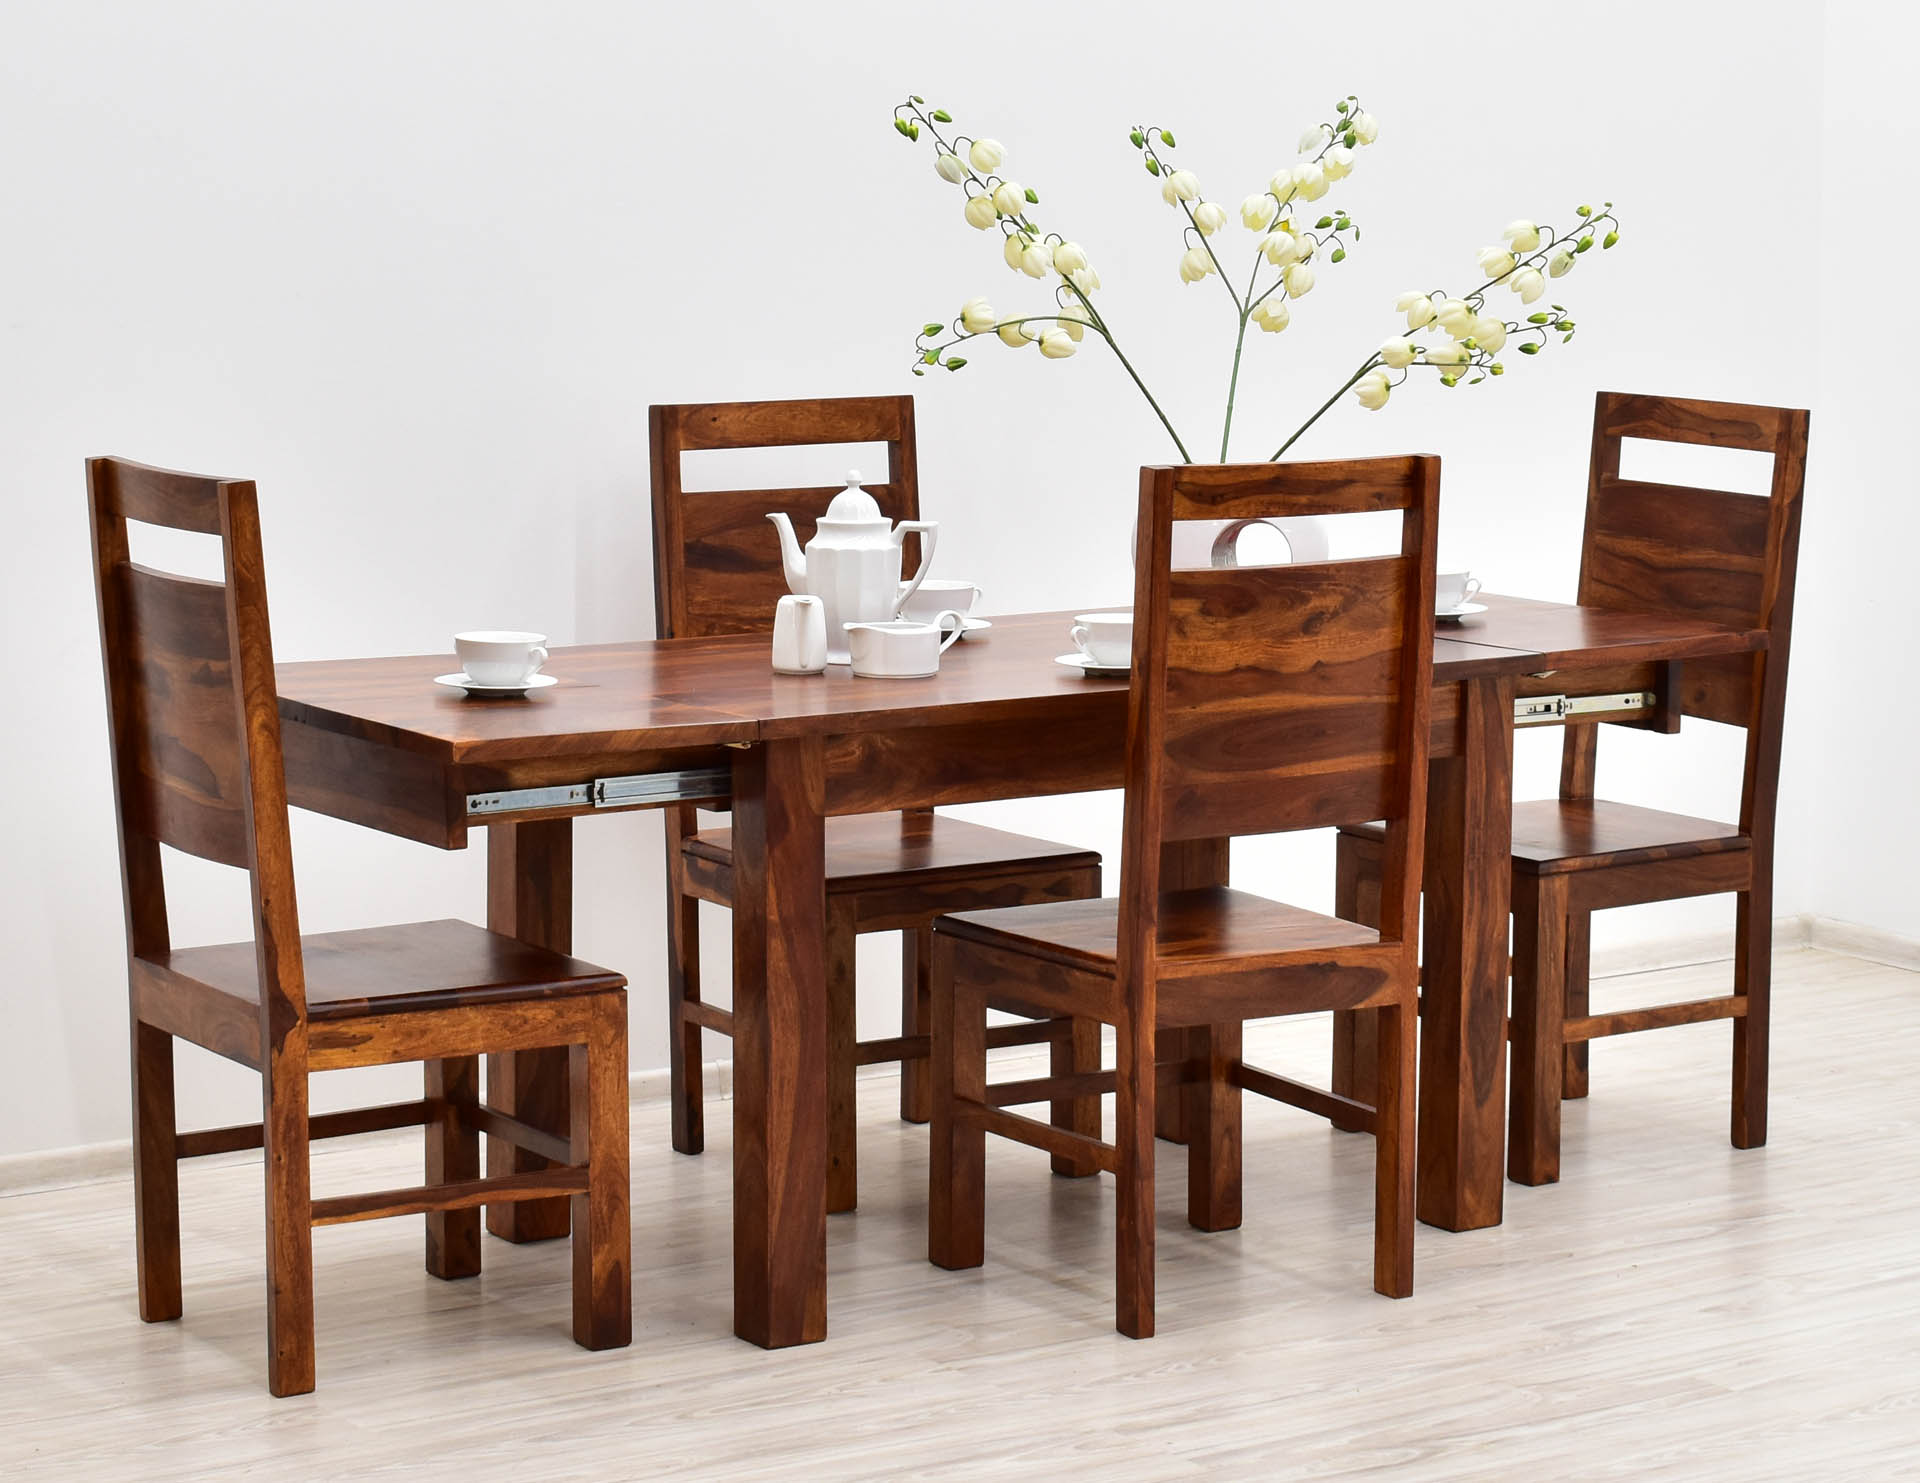 komplet-obiadowy-kolonialny-stol-rozkladany-4-krzesla-lite-drewno-palisander-indyjski